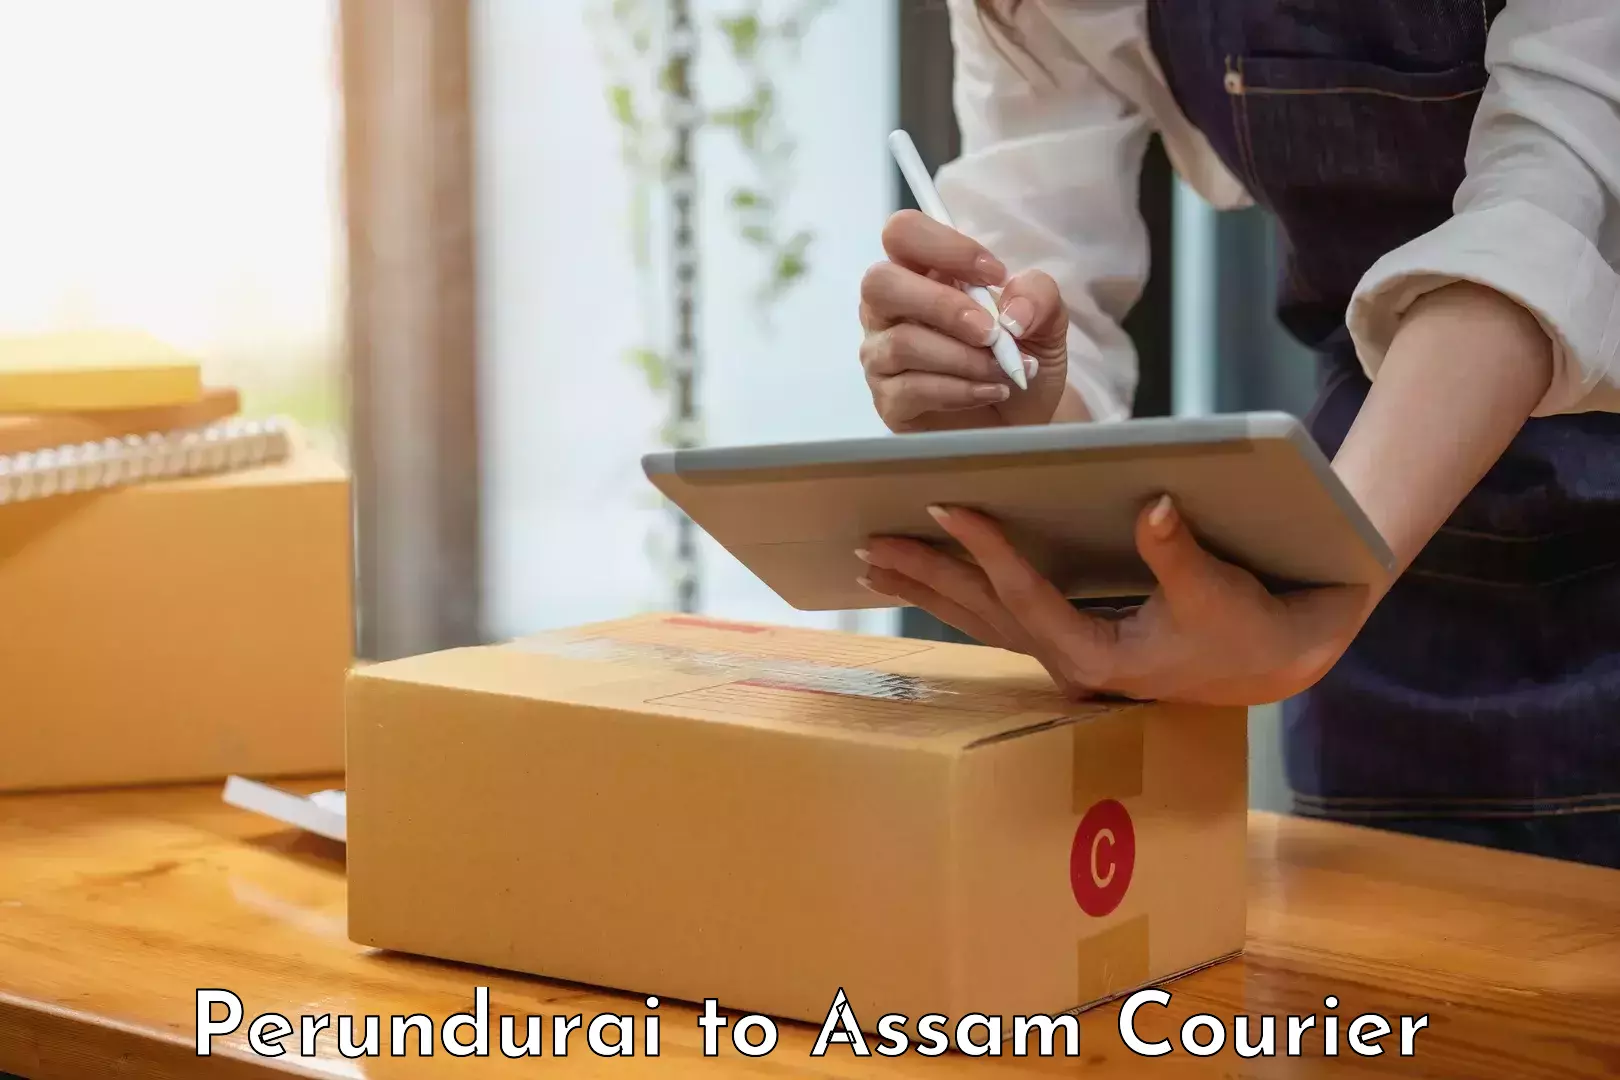 Easy return solutions in Perundurai to Assam